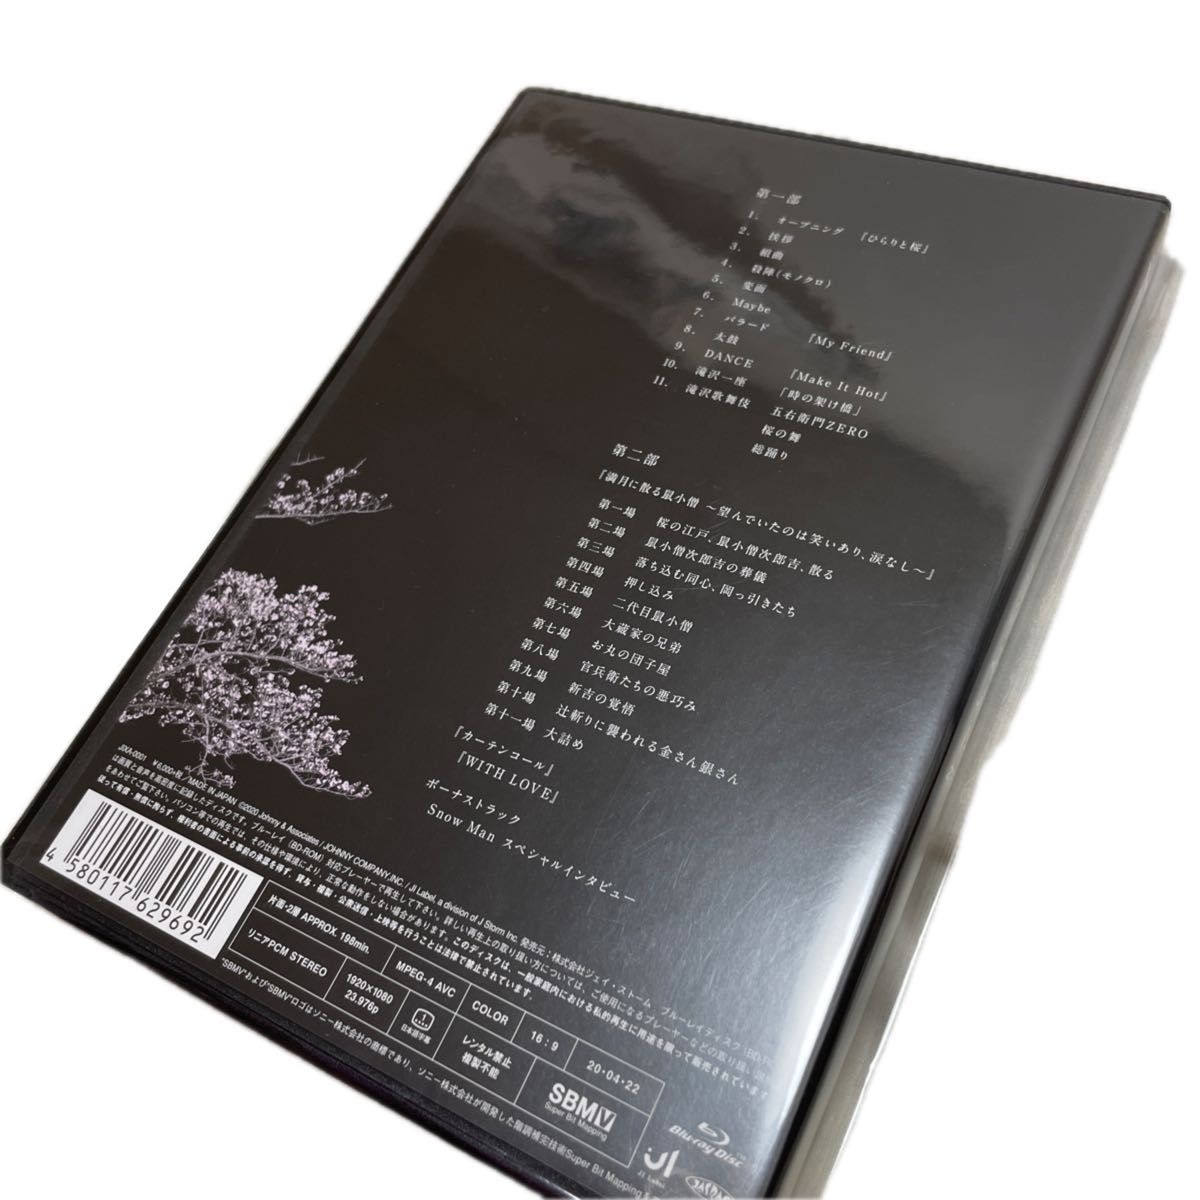 滝沢歌舞伎ZERO (Blu-ray通常盤) (通常仕様)